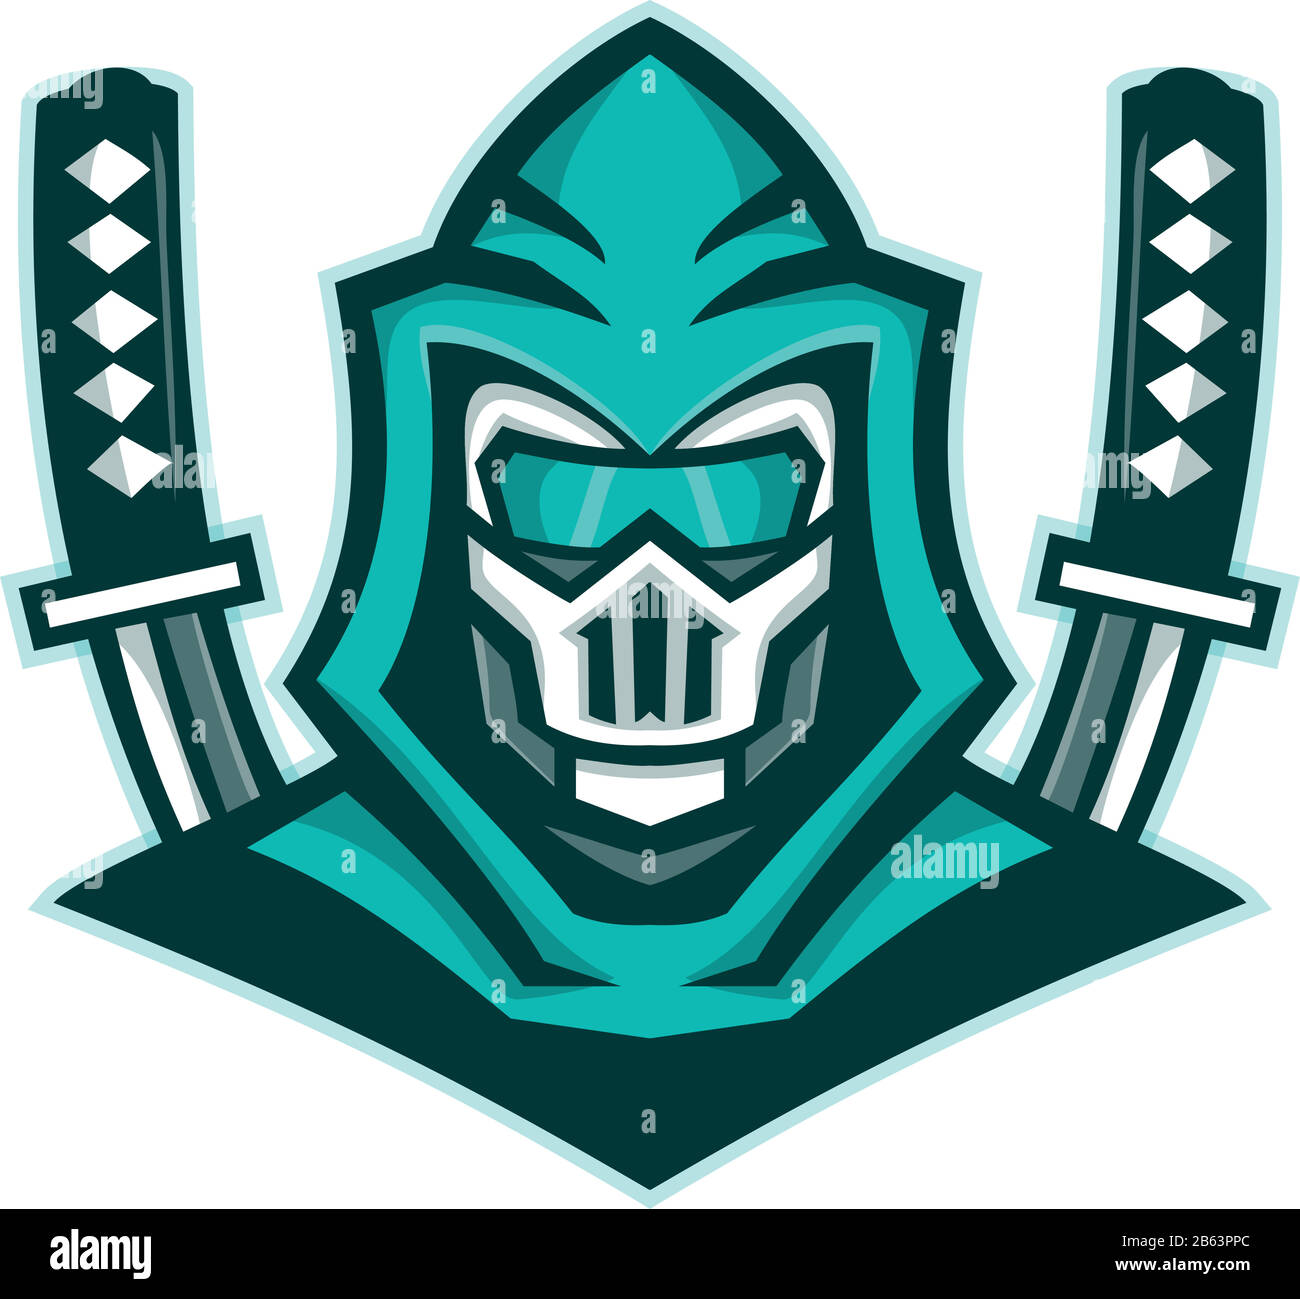 Icona Mascot immagine di testa di un cyborg ninja o organismo cibernetico, con la spada samurai visto di fronte su sfondo isolato in stile retrò. Illustrazione Vettoriale